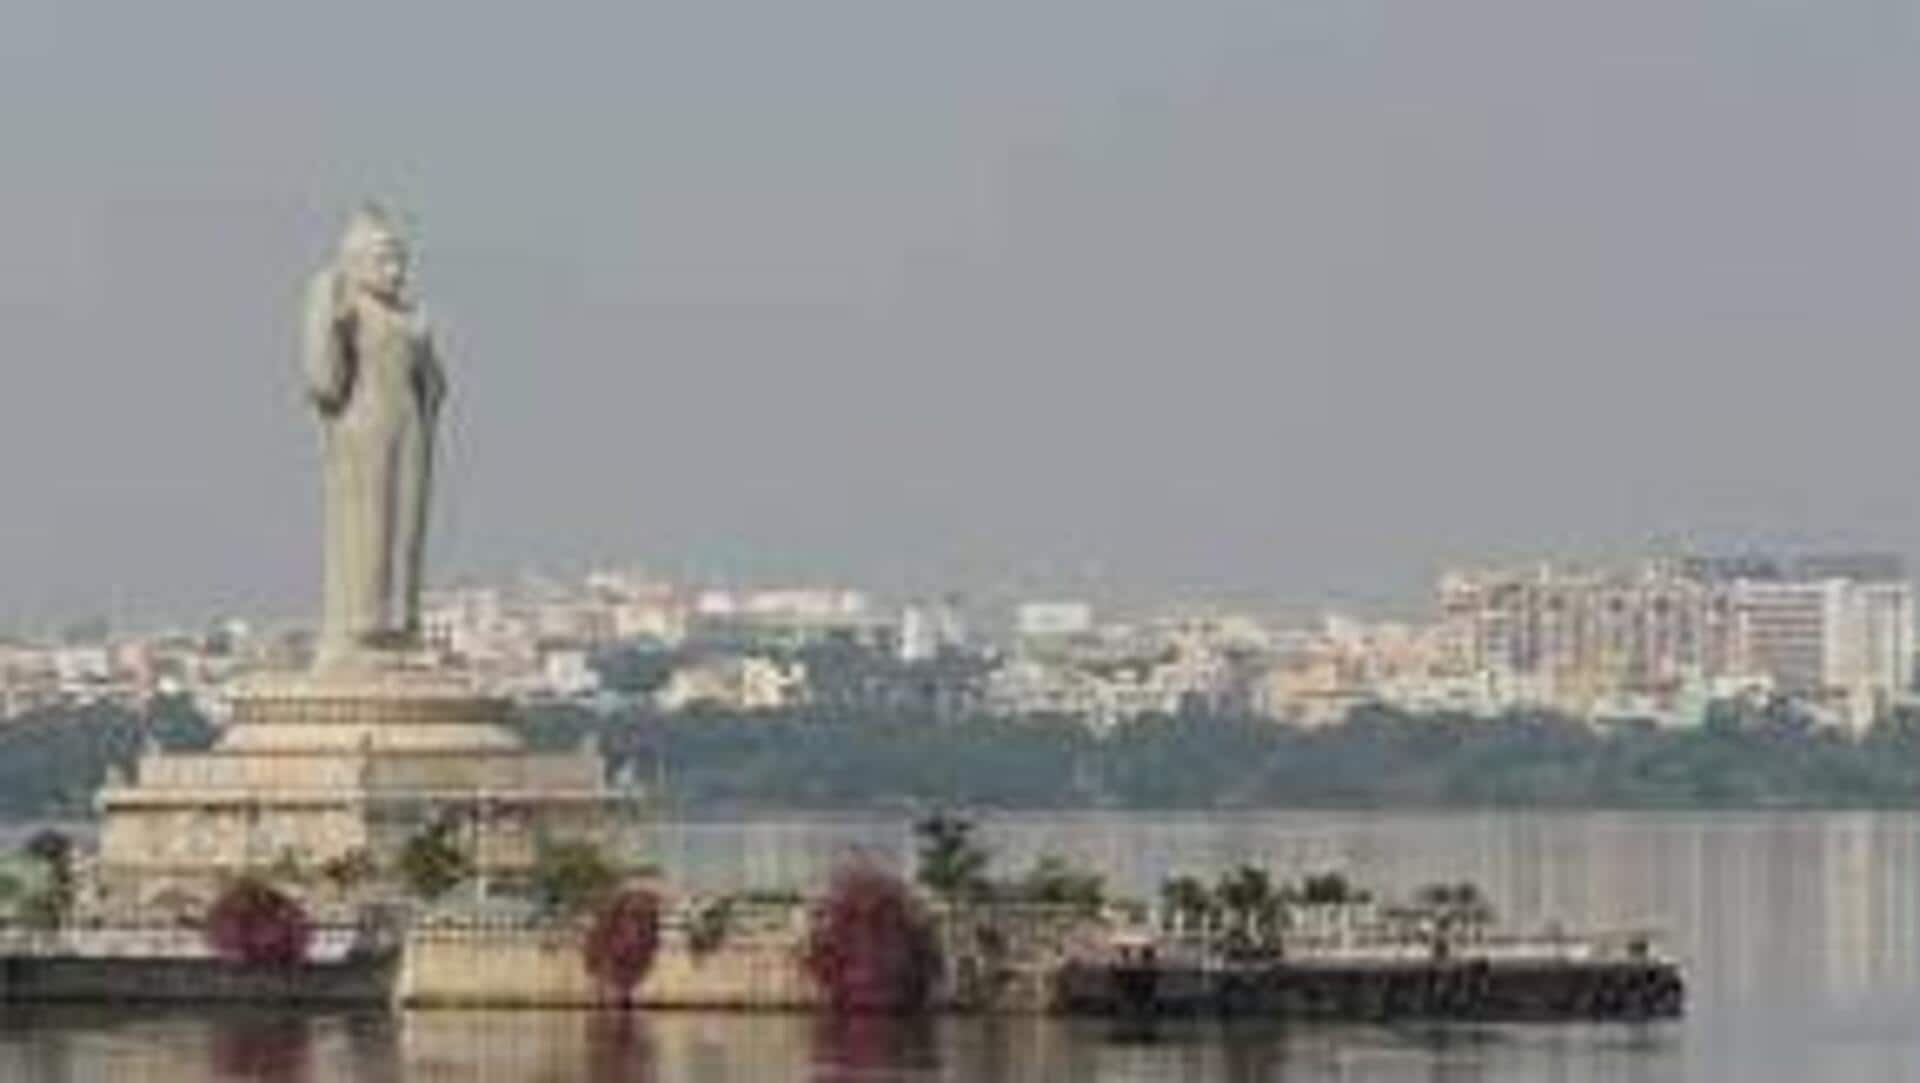 హైదరాబాద్ వరల్డ్ ర్యాంక్ 202... అత్యంత ఖరీదైన నగరాల్లో భాగ్యనగరం